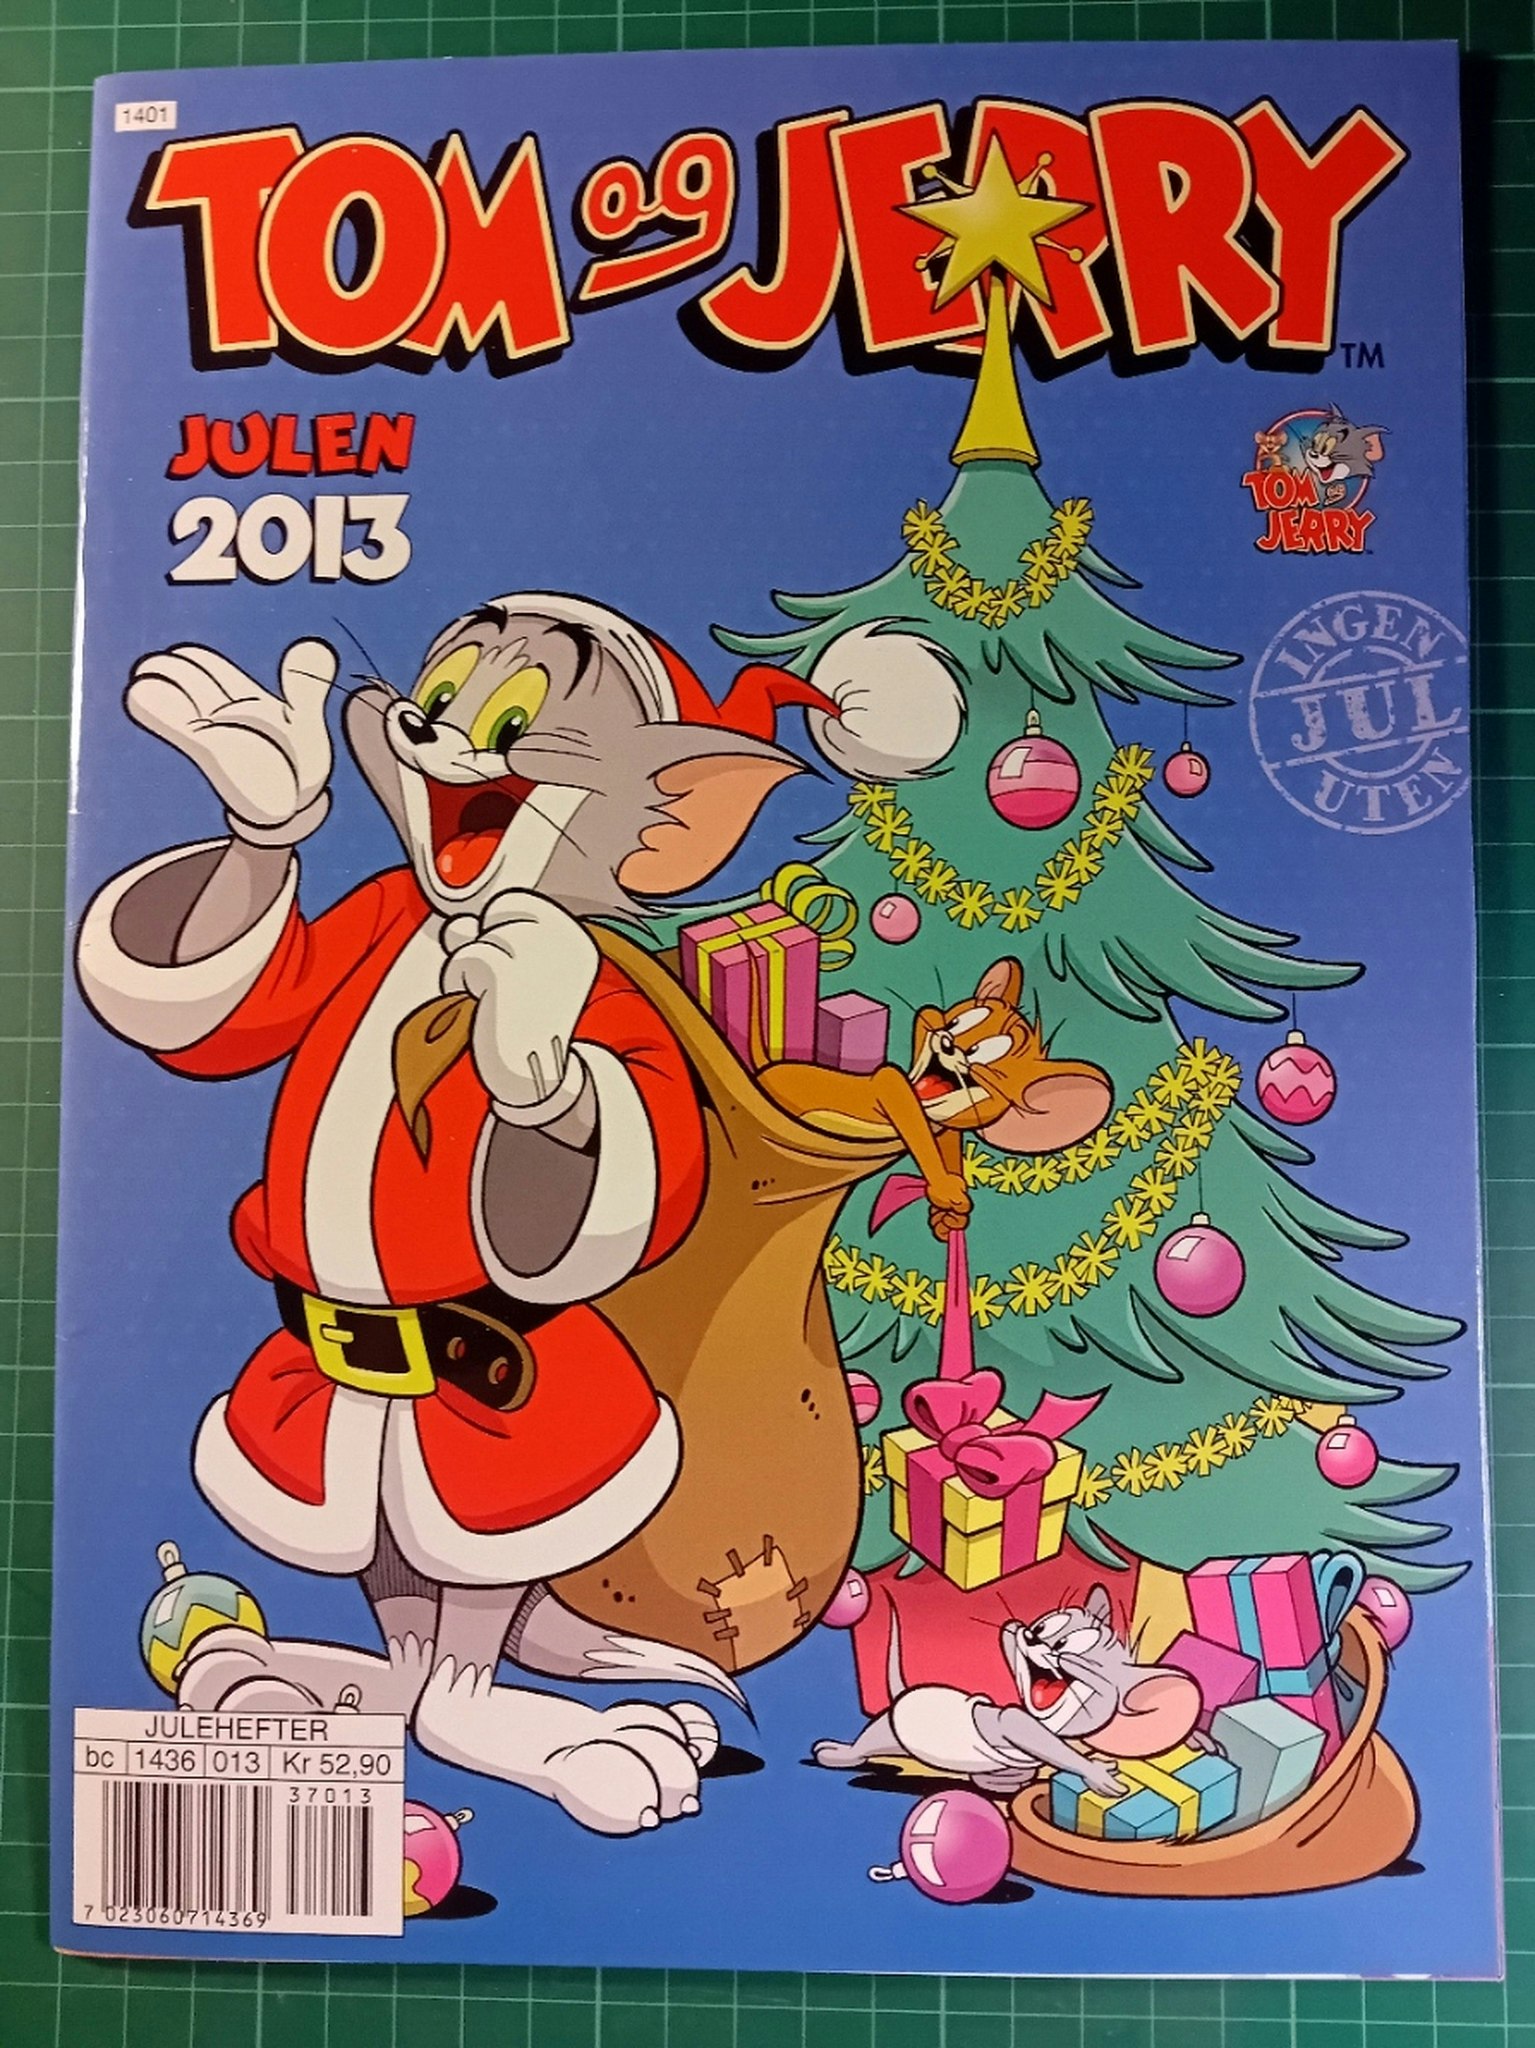 Tom & Jerry julen 2013